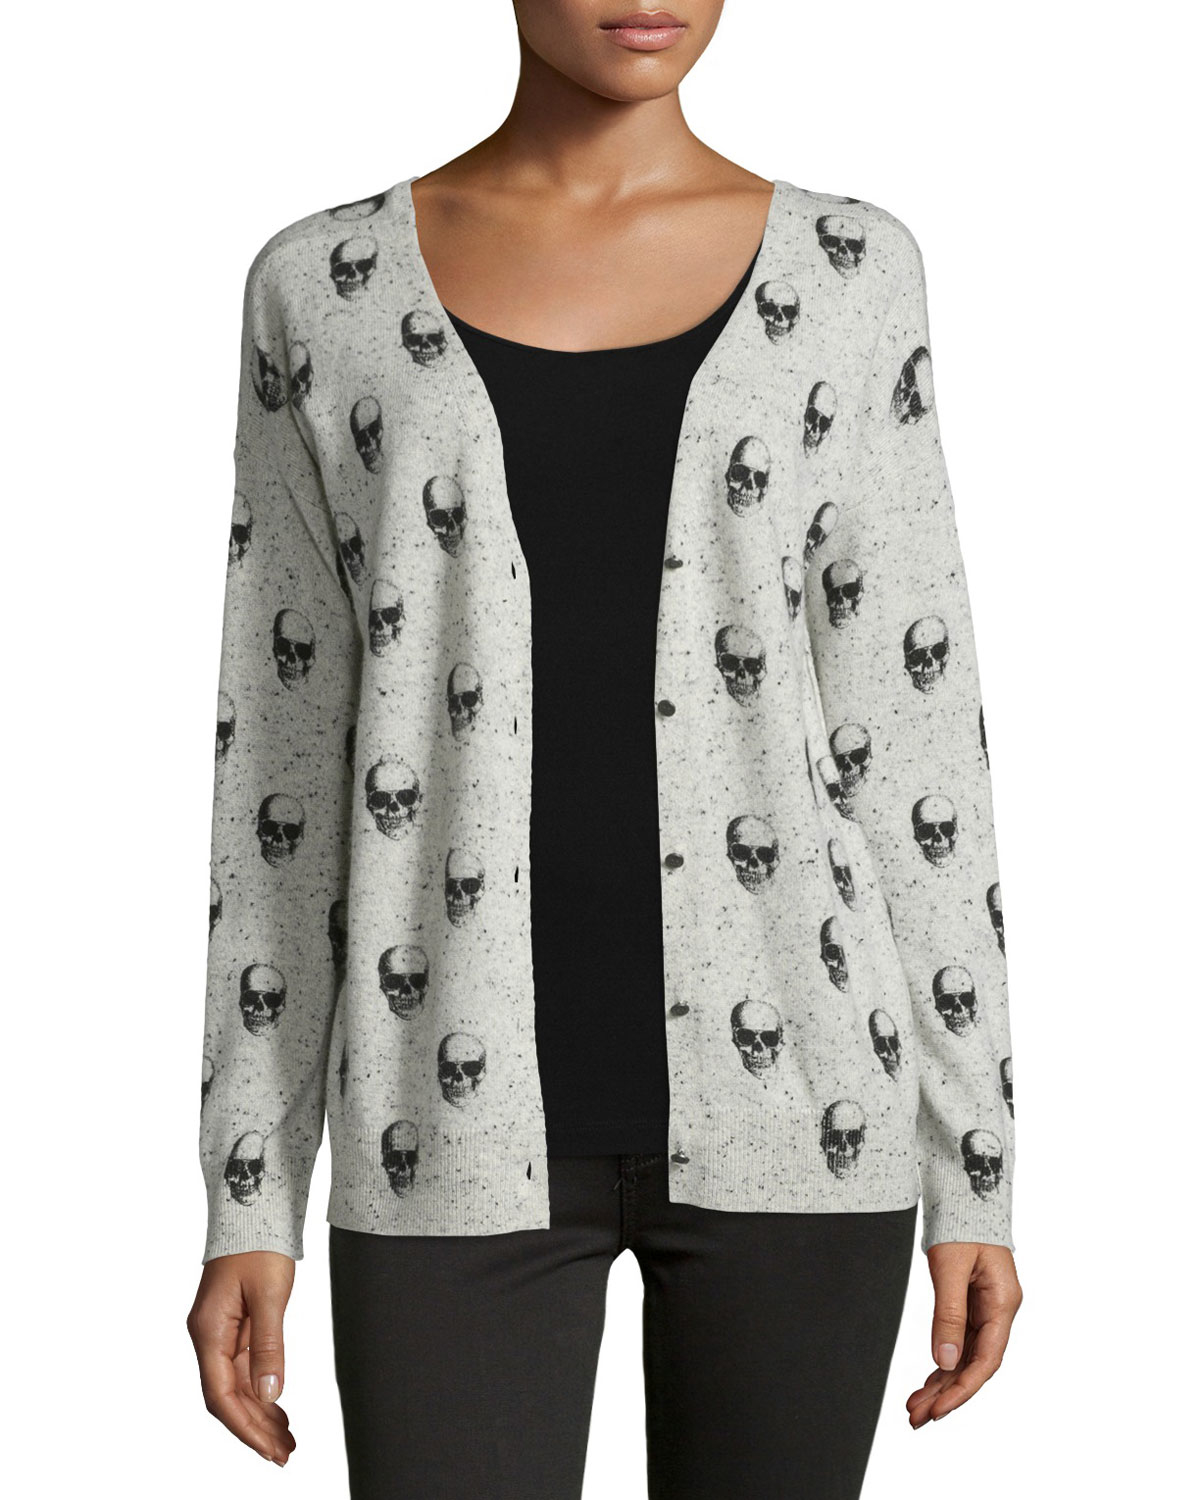 dark gray cardigan sweater designs patterns online